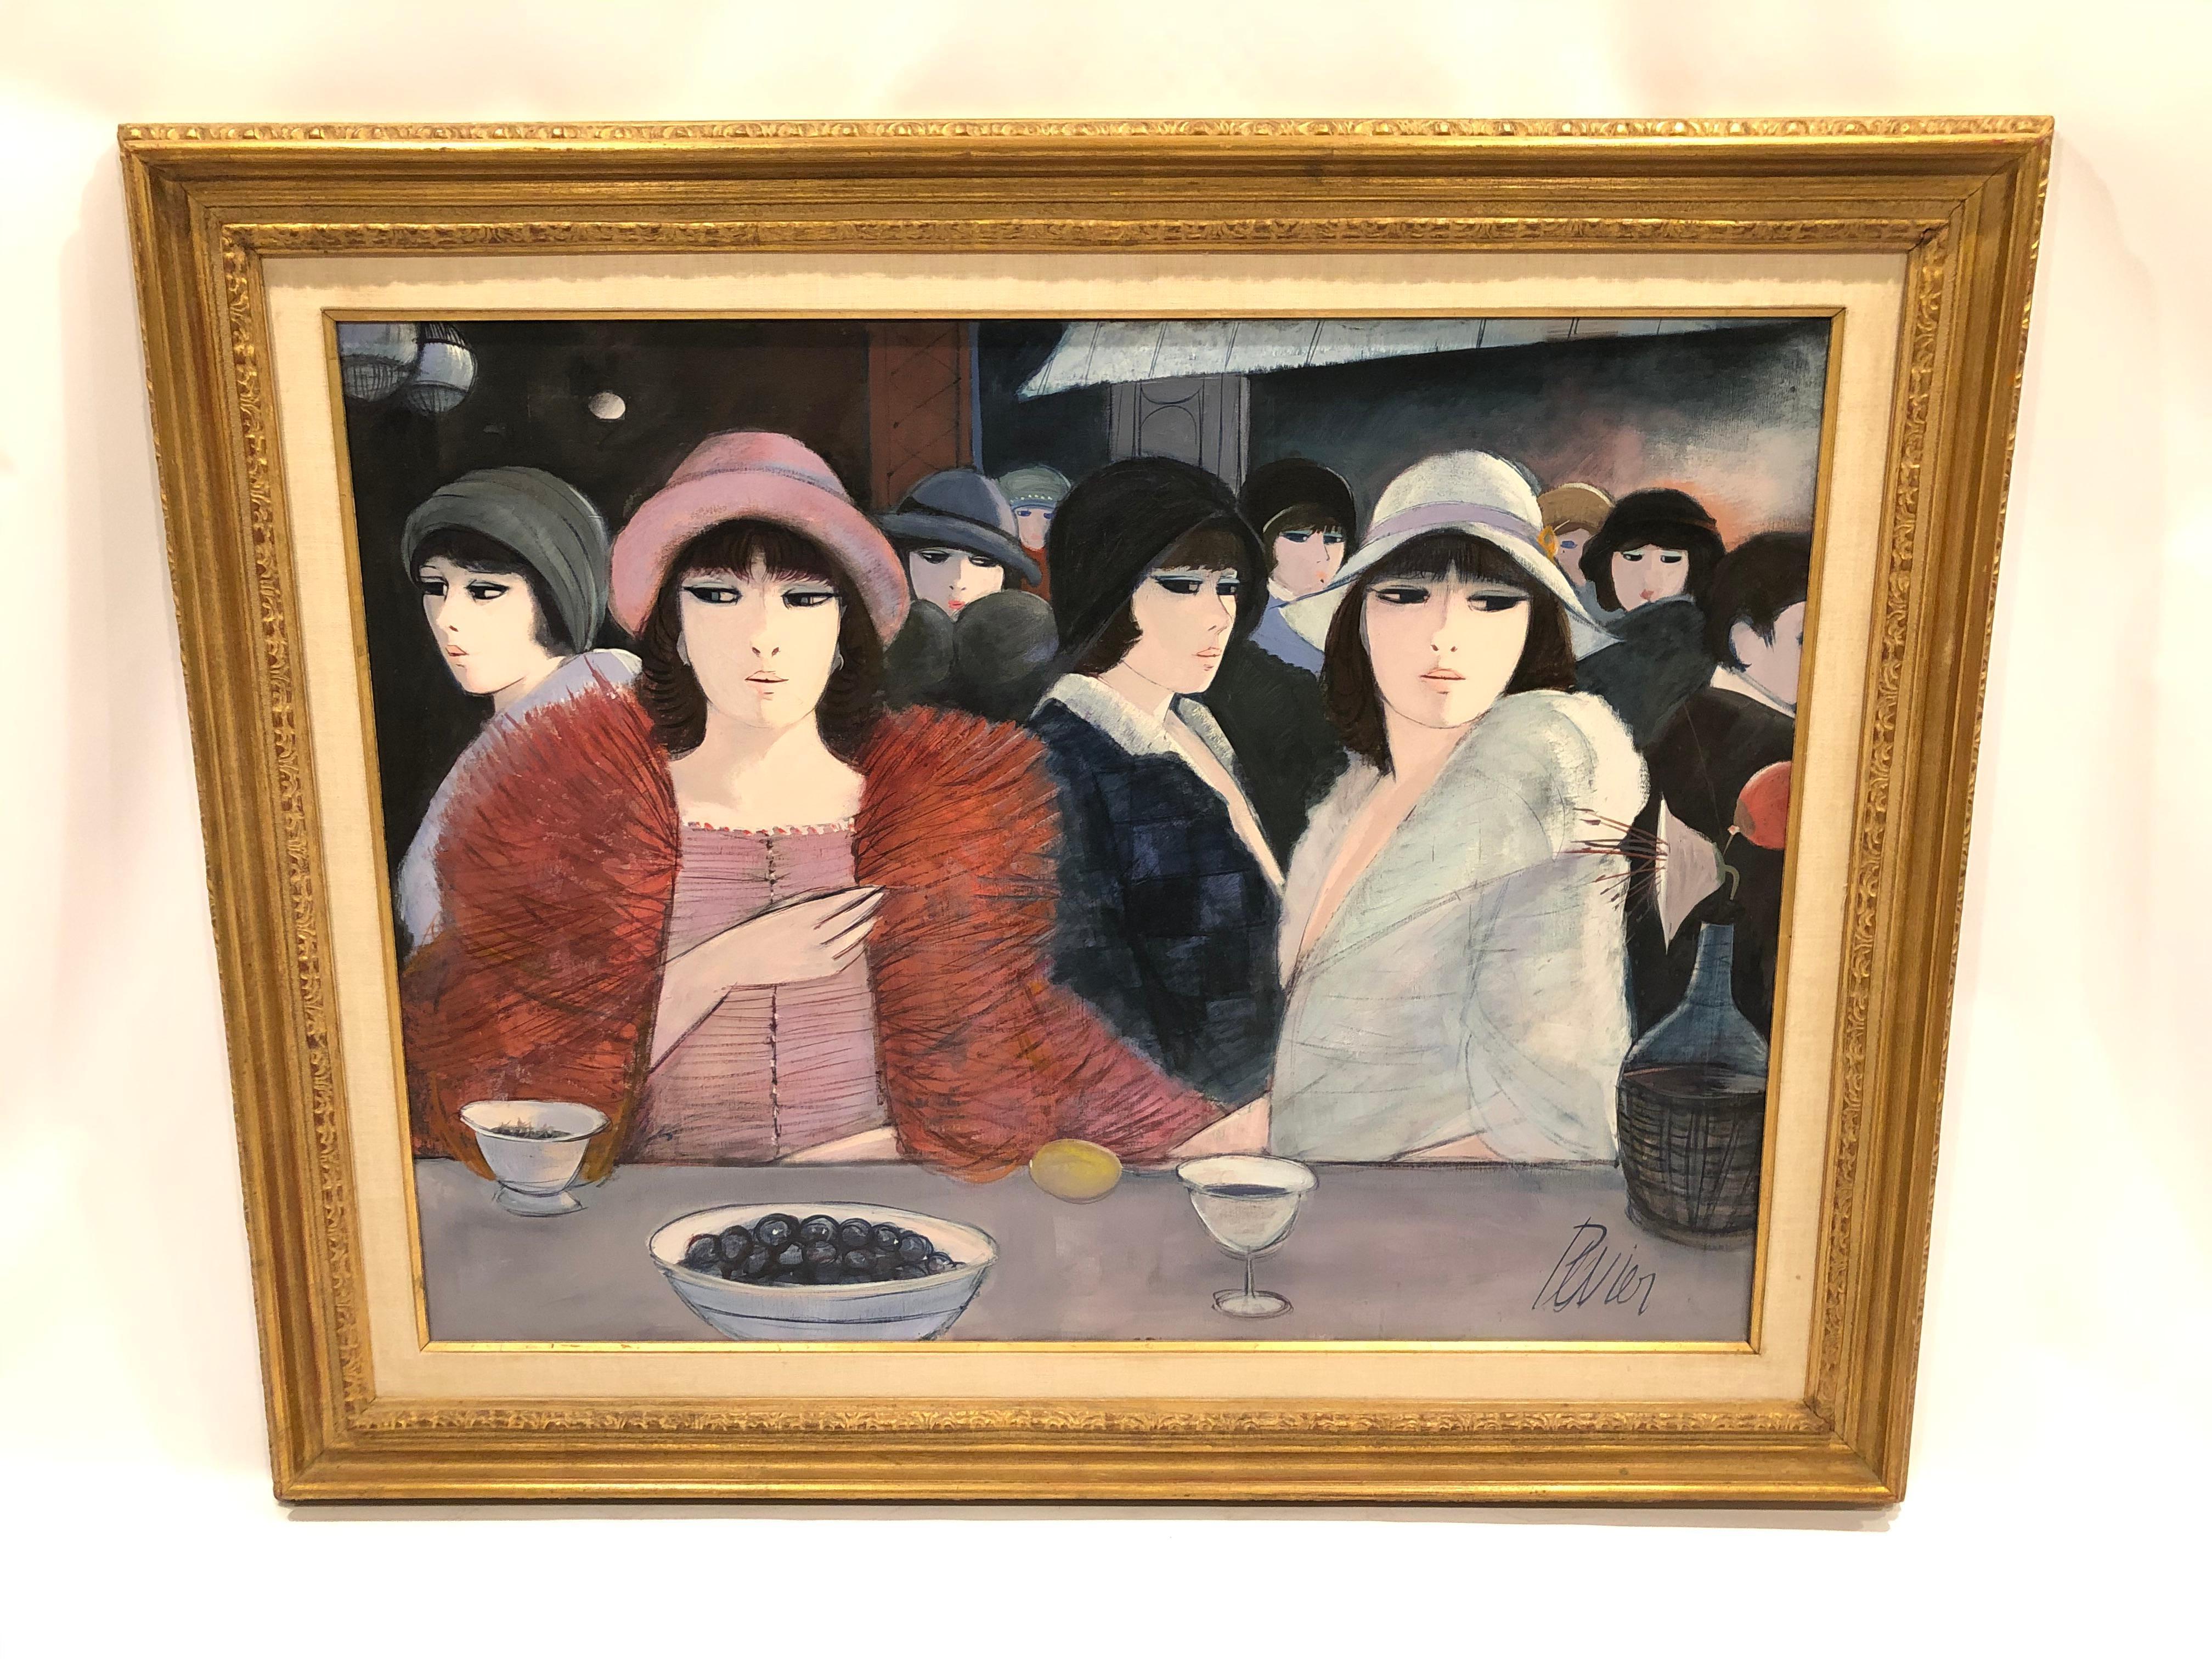 Charles Levier wurde 1920 in Korsika, Frankreich, geboren und starb 2003. Dieses unglaublich große Gemälde ist ein Sinnbild für seine berühmten stilisierten Frauenfiguren mit hohlen, fast asiatischen Augen und moderner kubistischer Sensibilität. Er